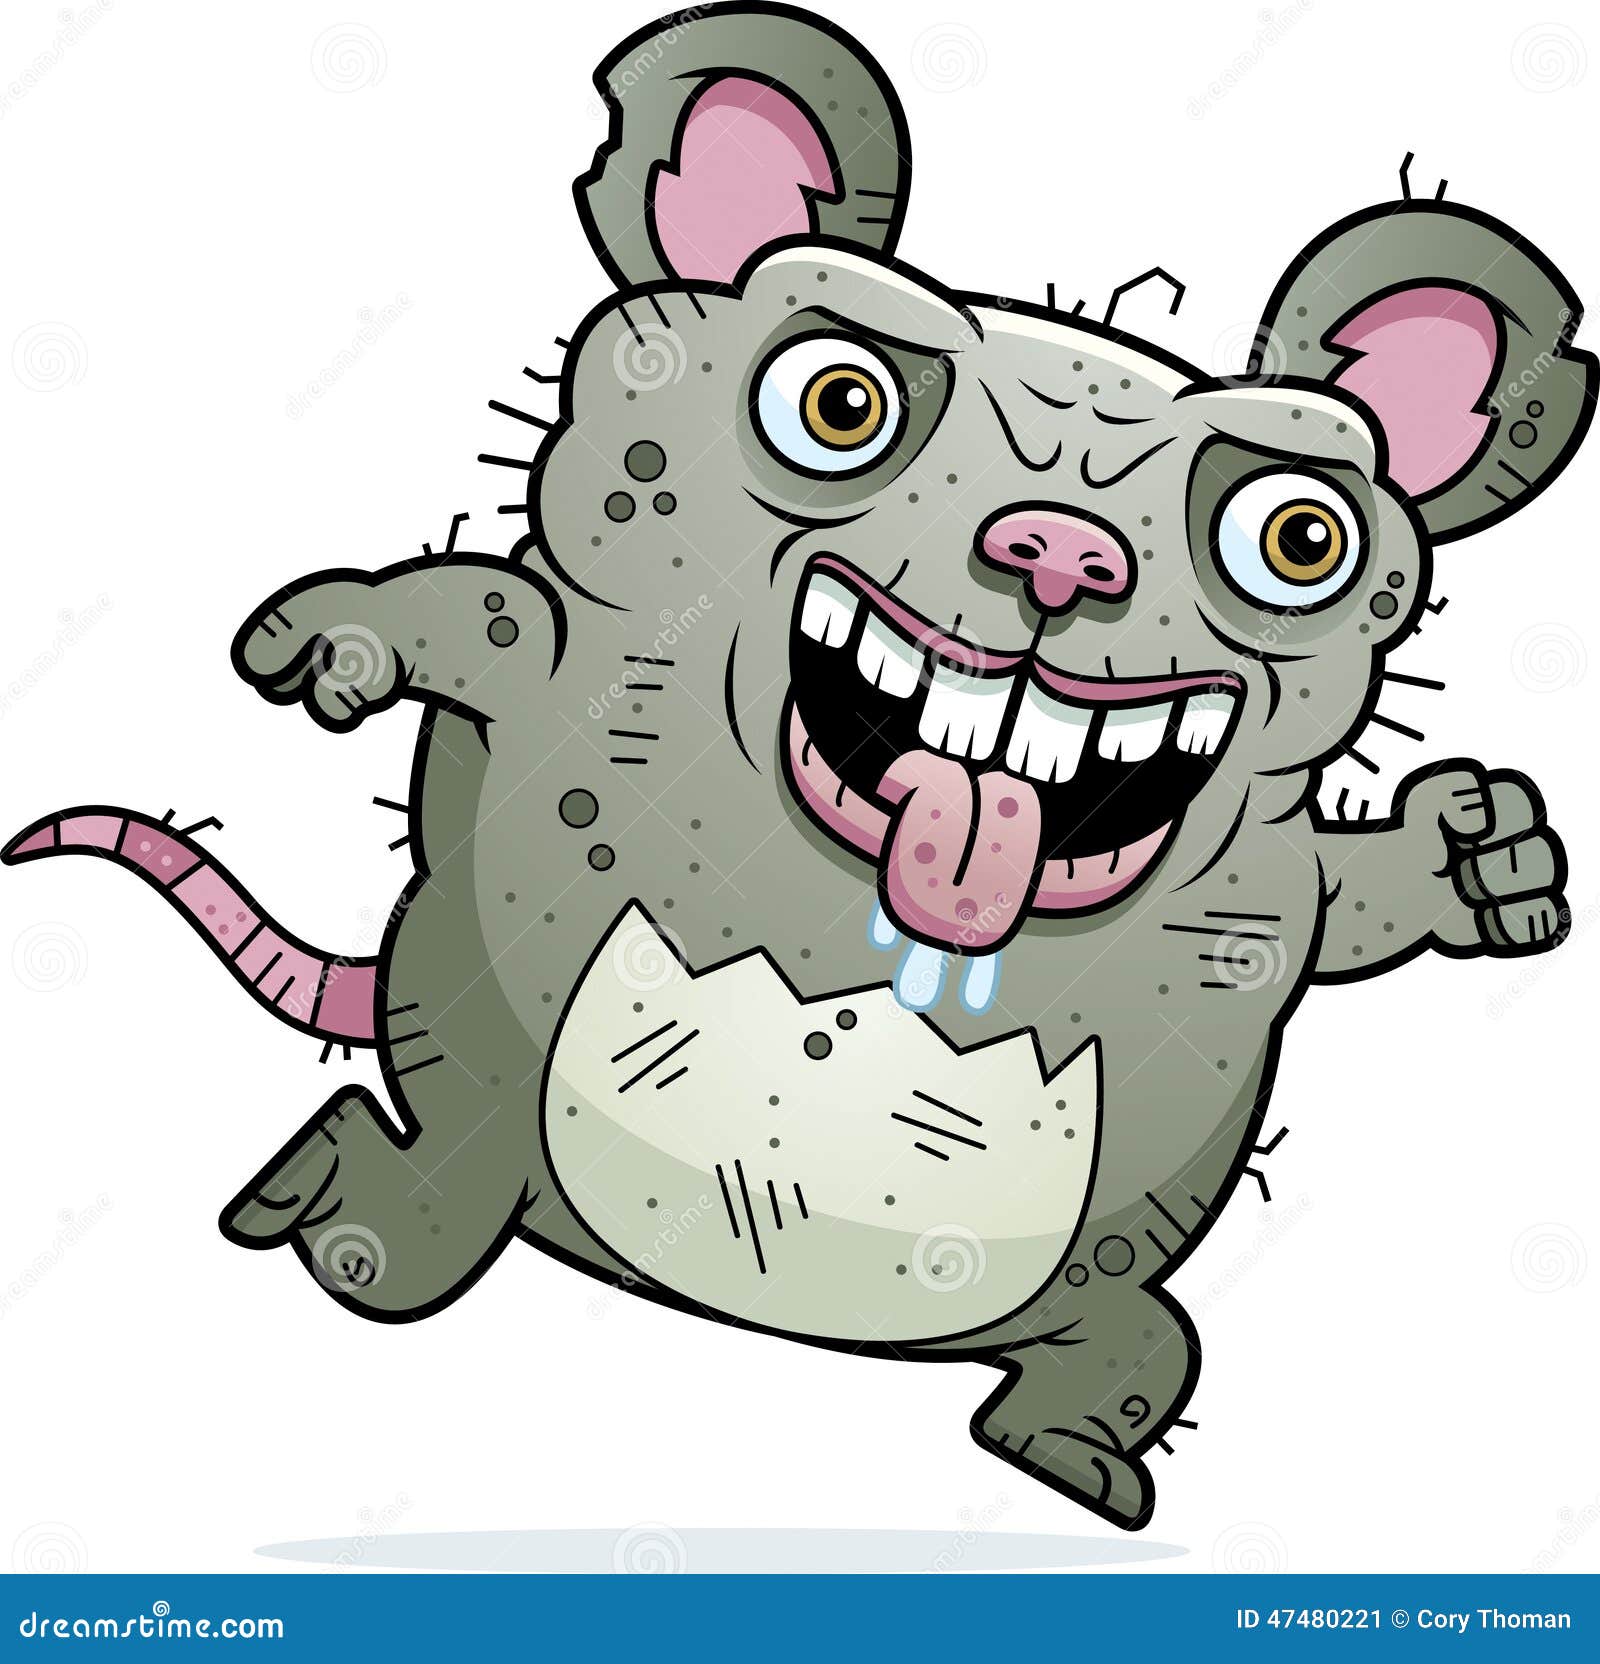 ugly-rat-running-cartoon-illustration-47480221.jpg